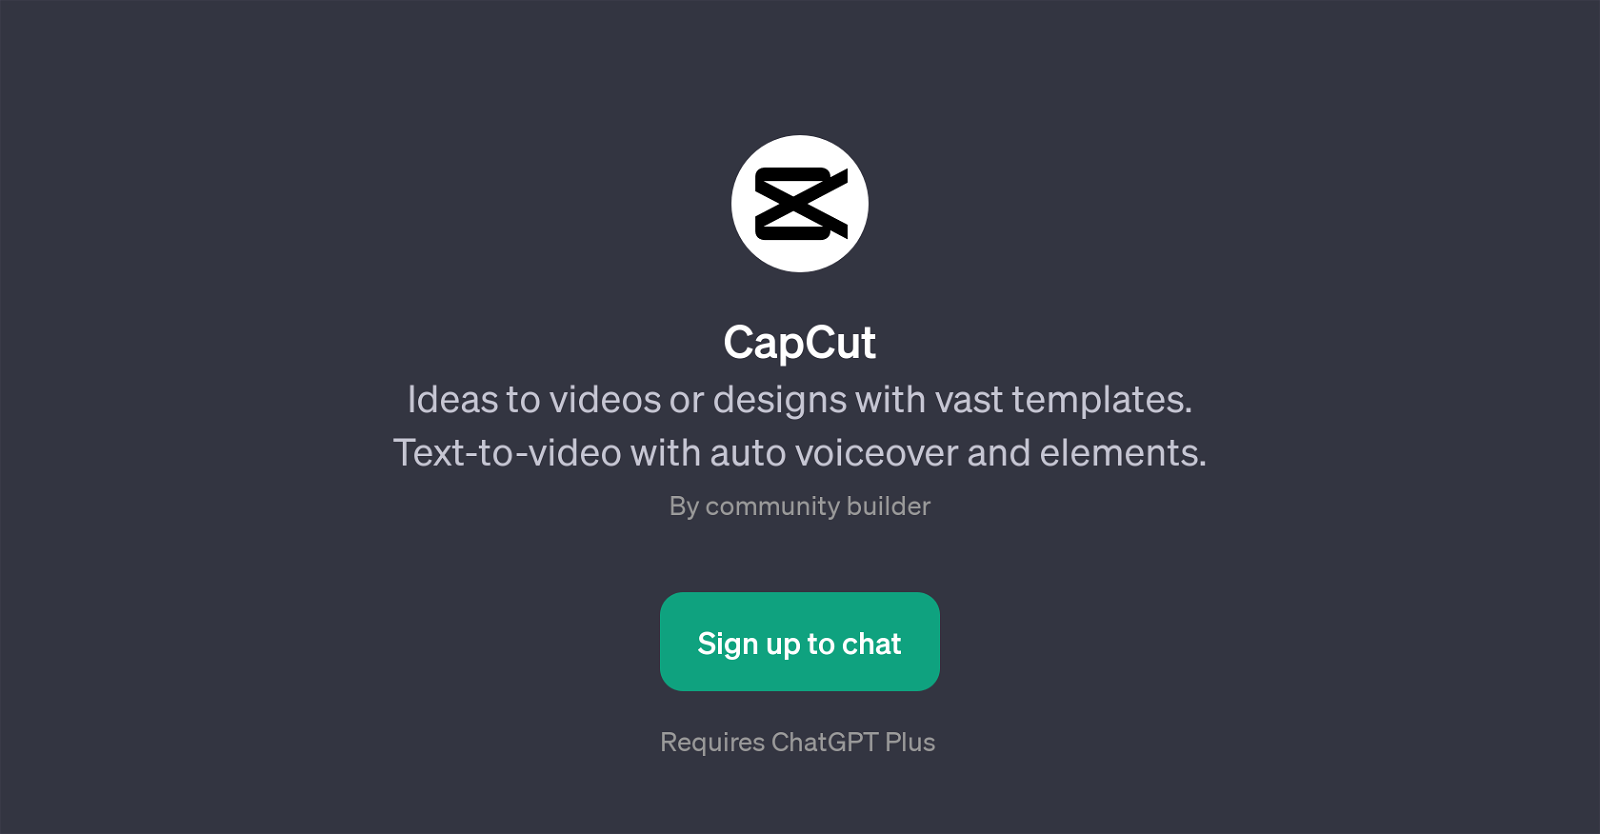 CapCut website